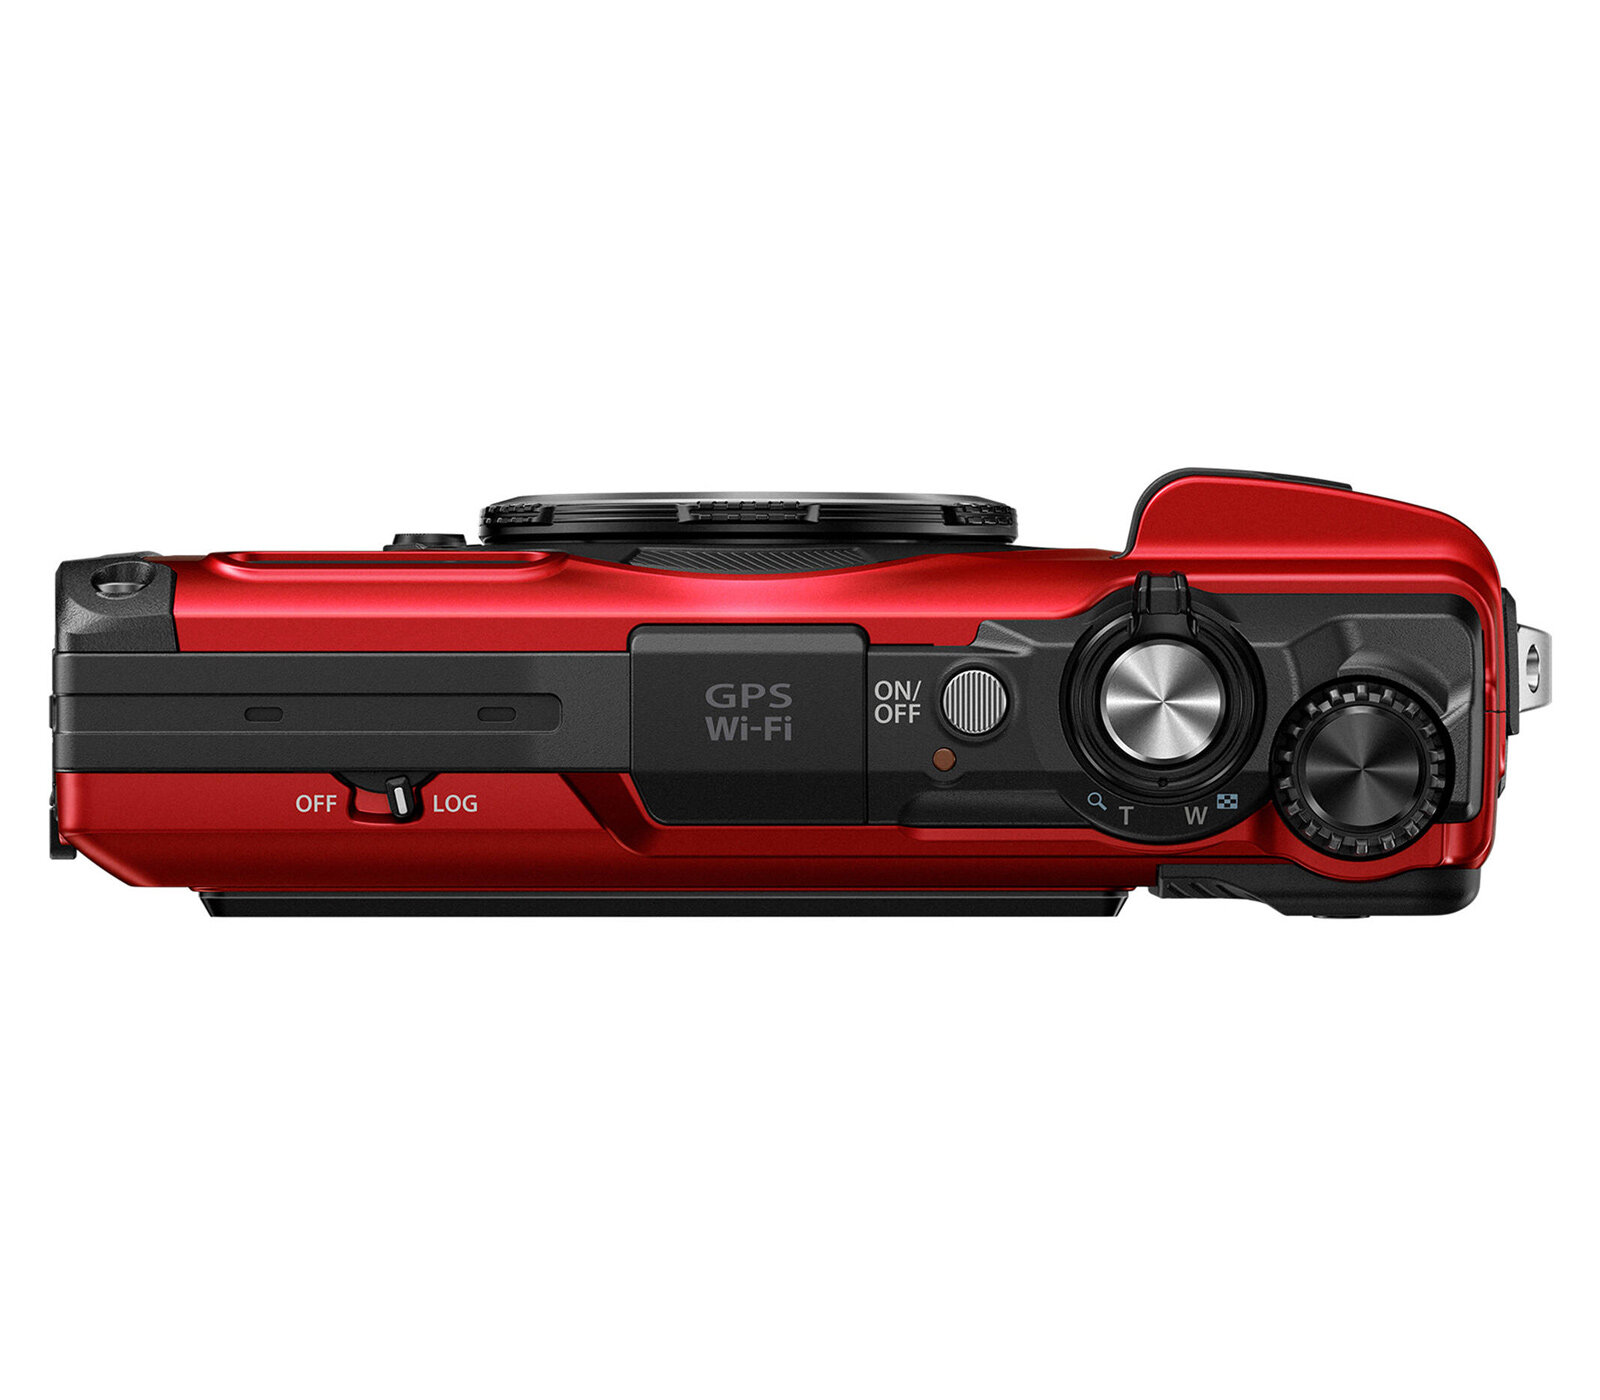 Компактный фотоаппарат OM System Tough TG-7, красный